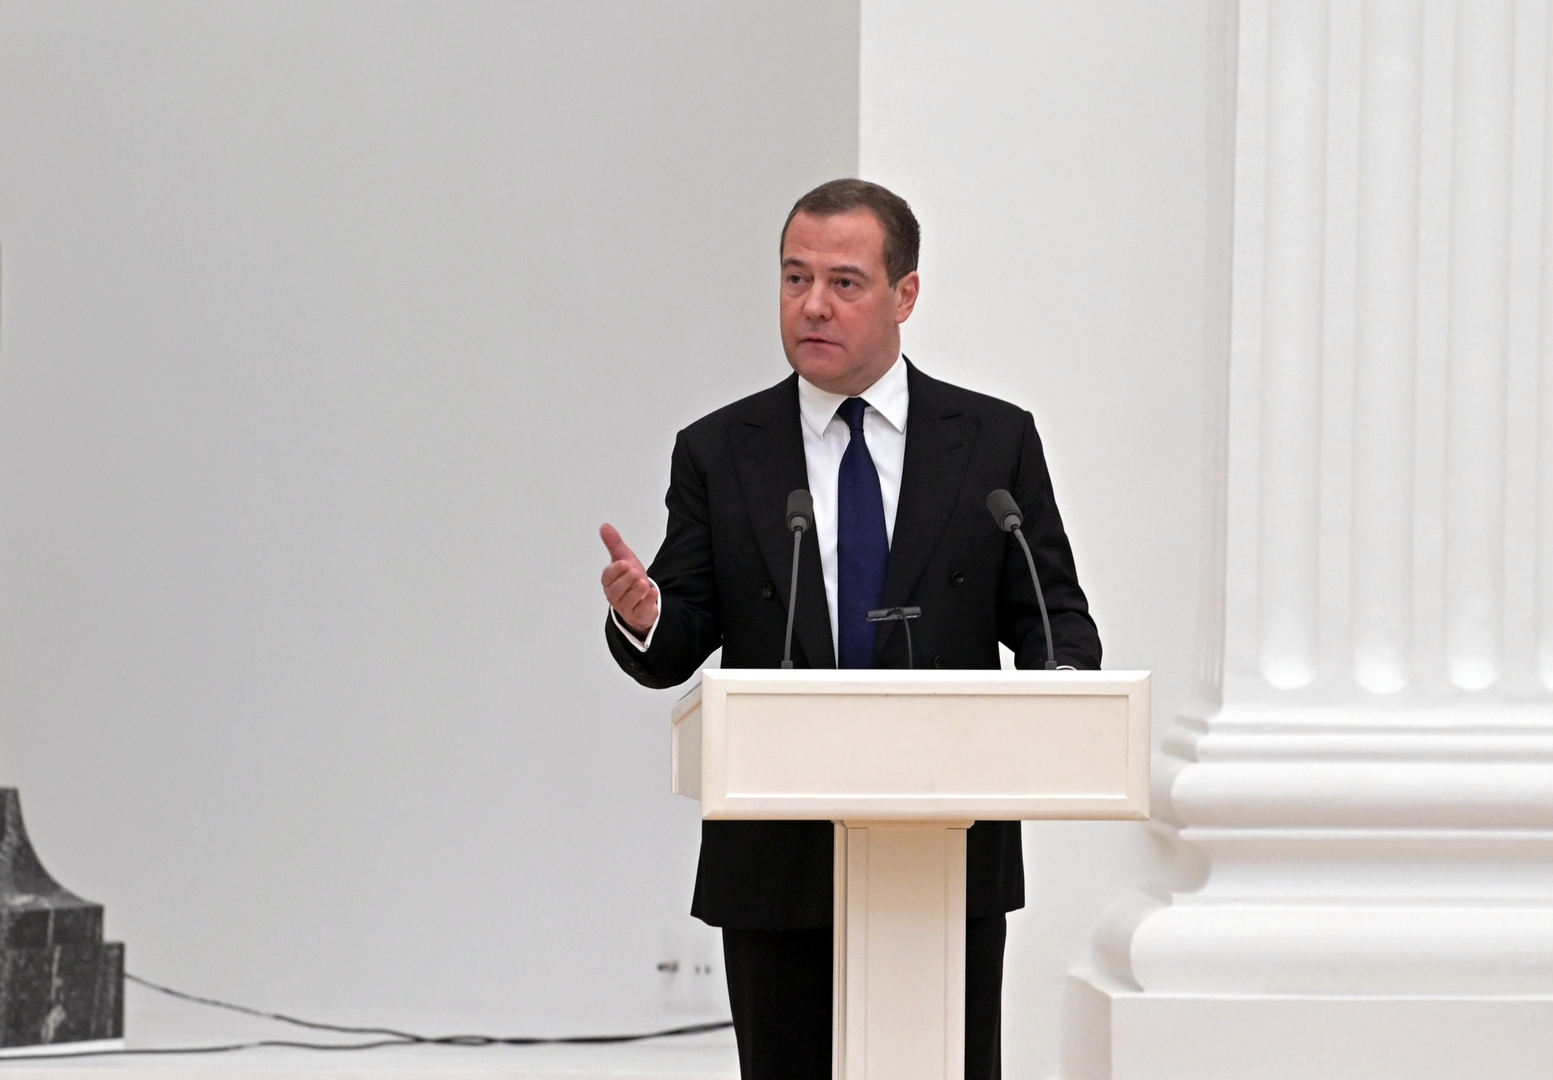 ميدفيديف معلقا على ارتفاع سعر الغاز في أوروبا: يبدو أن شولتس يستحم بالكامل